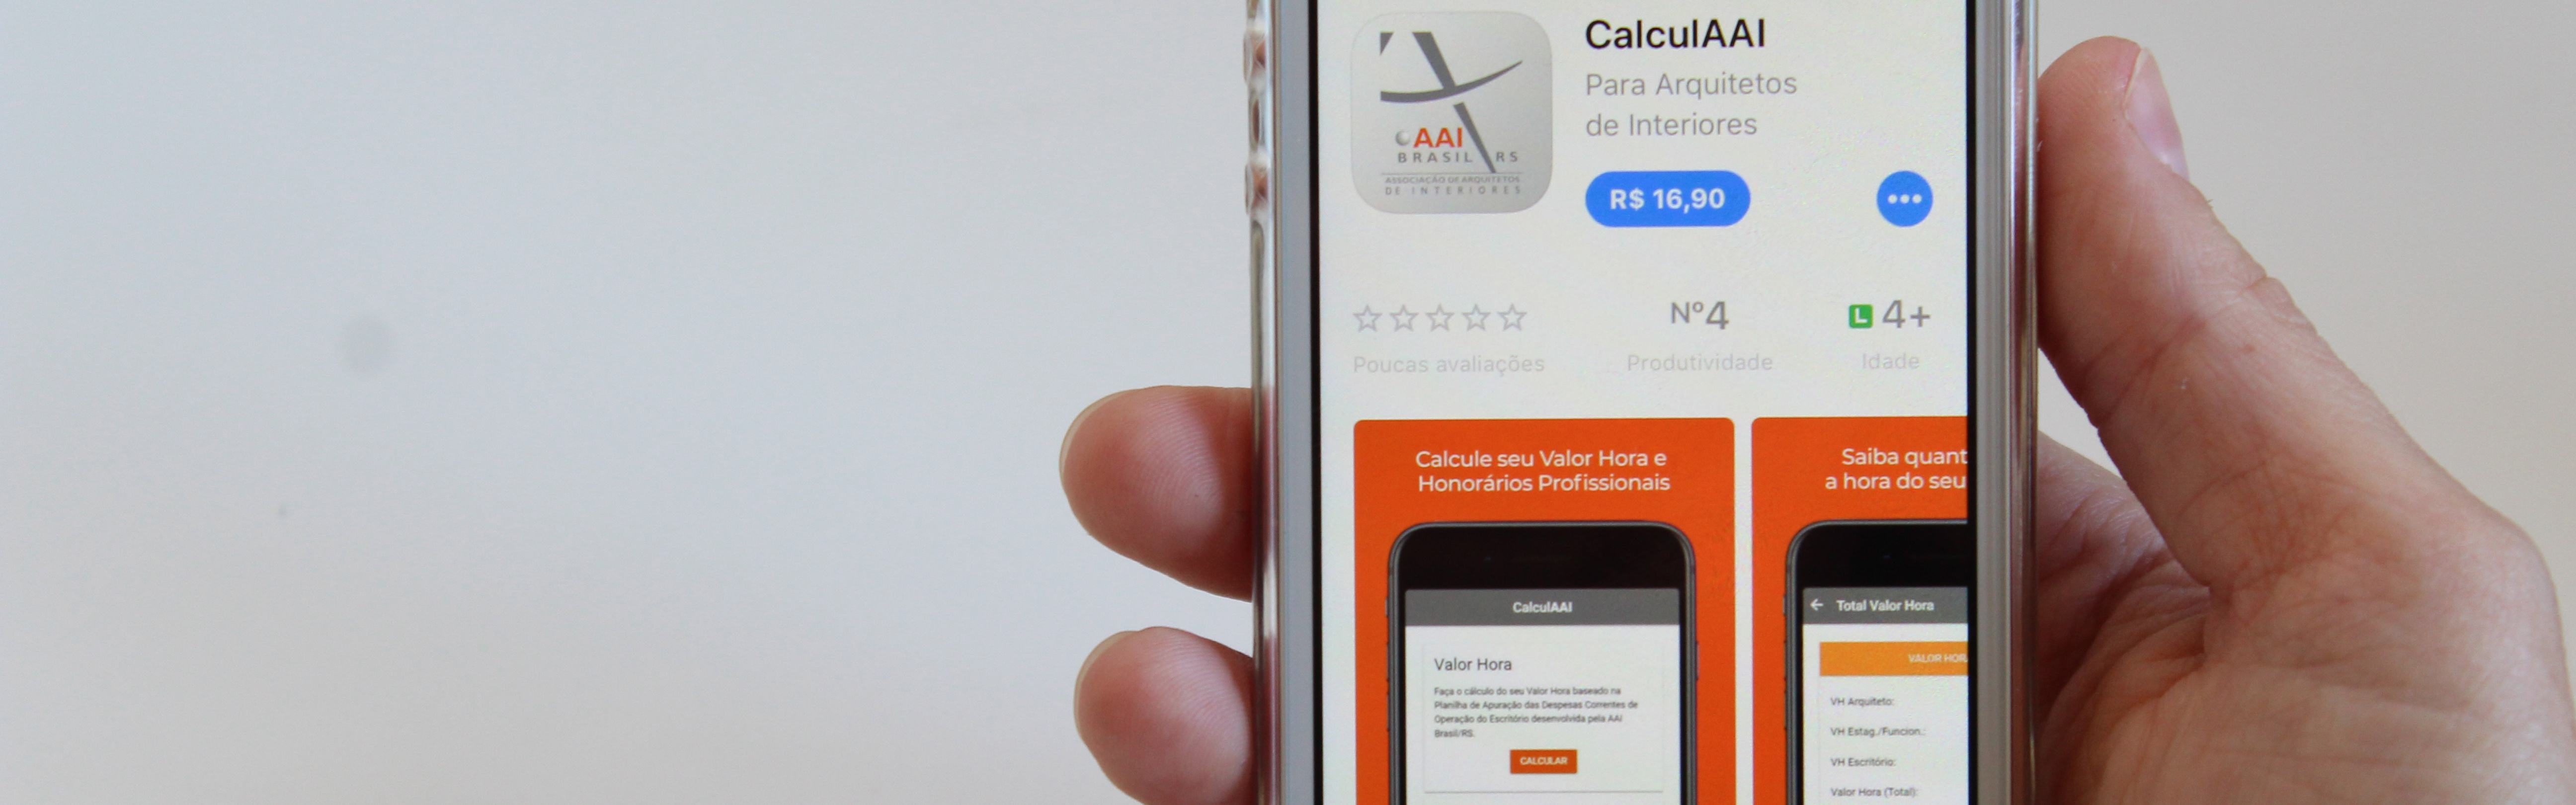 AAI Brasil/RS lança aplicativo para cálculo de honorários profissionais